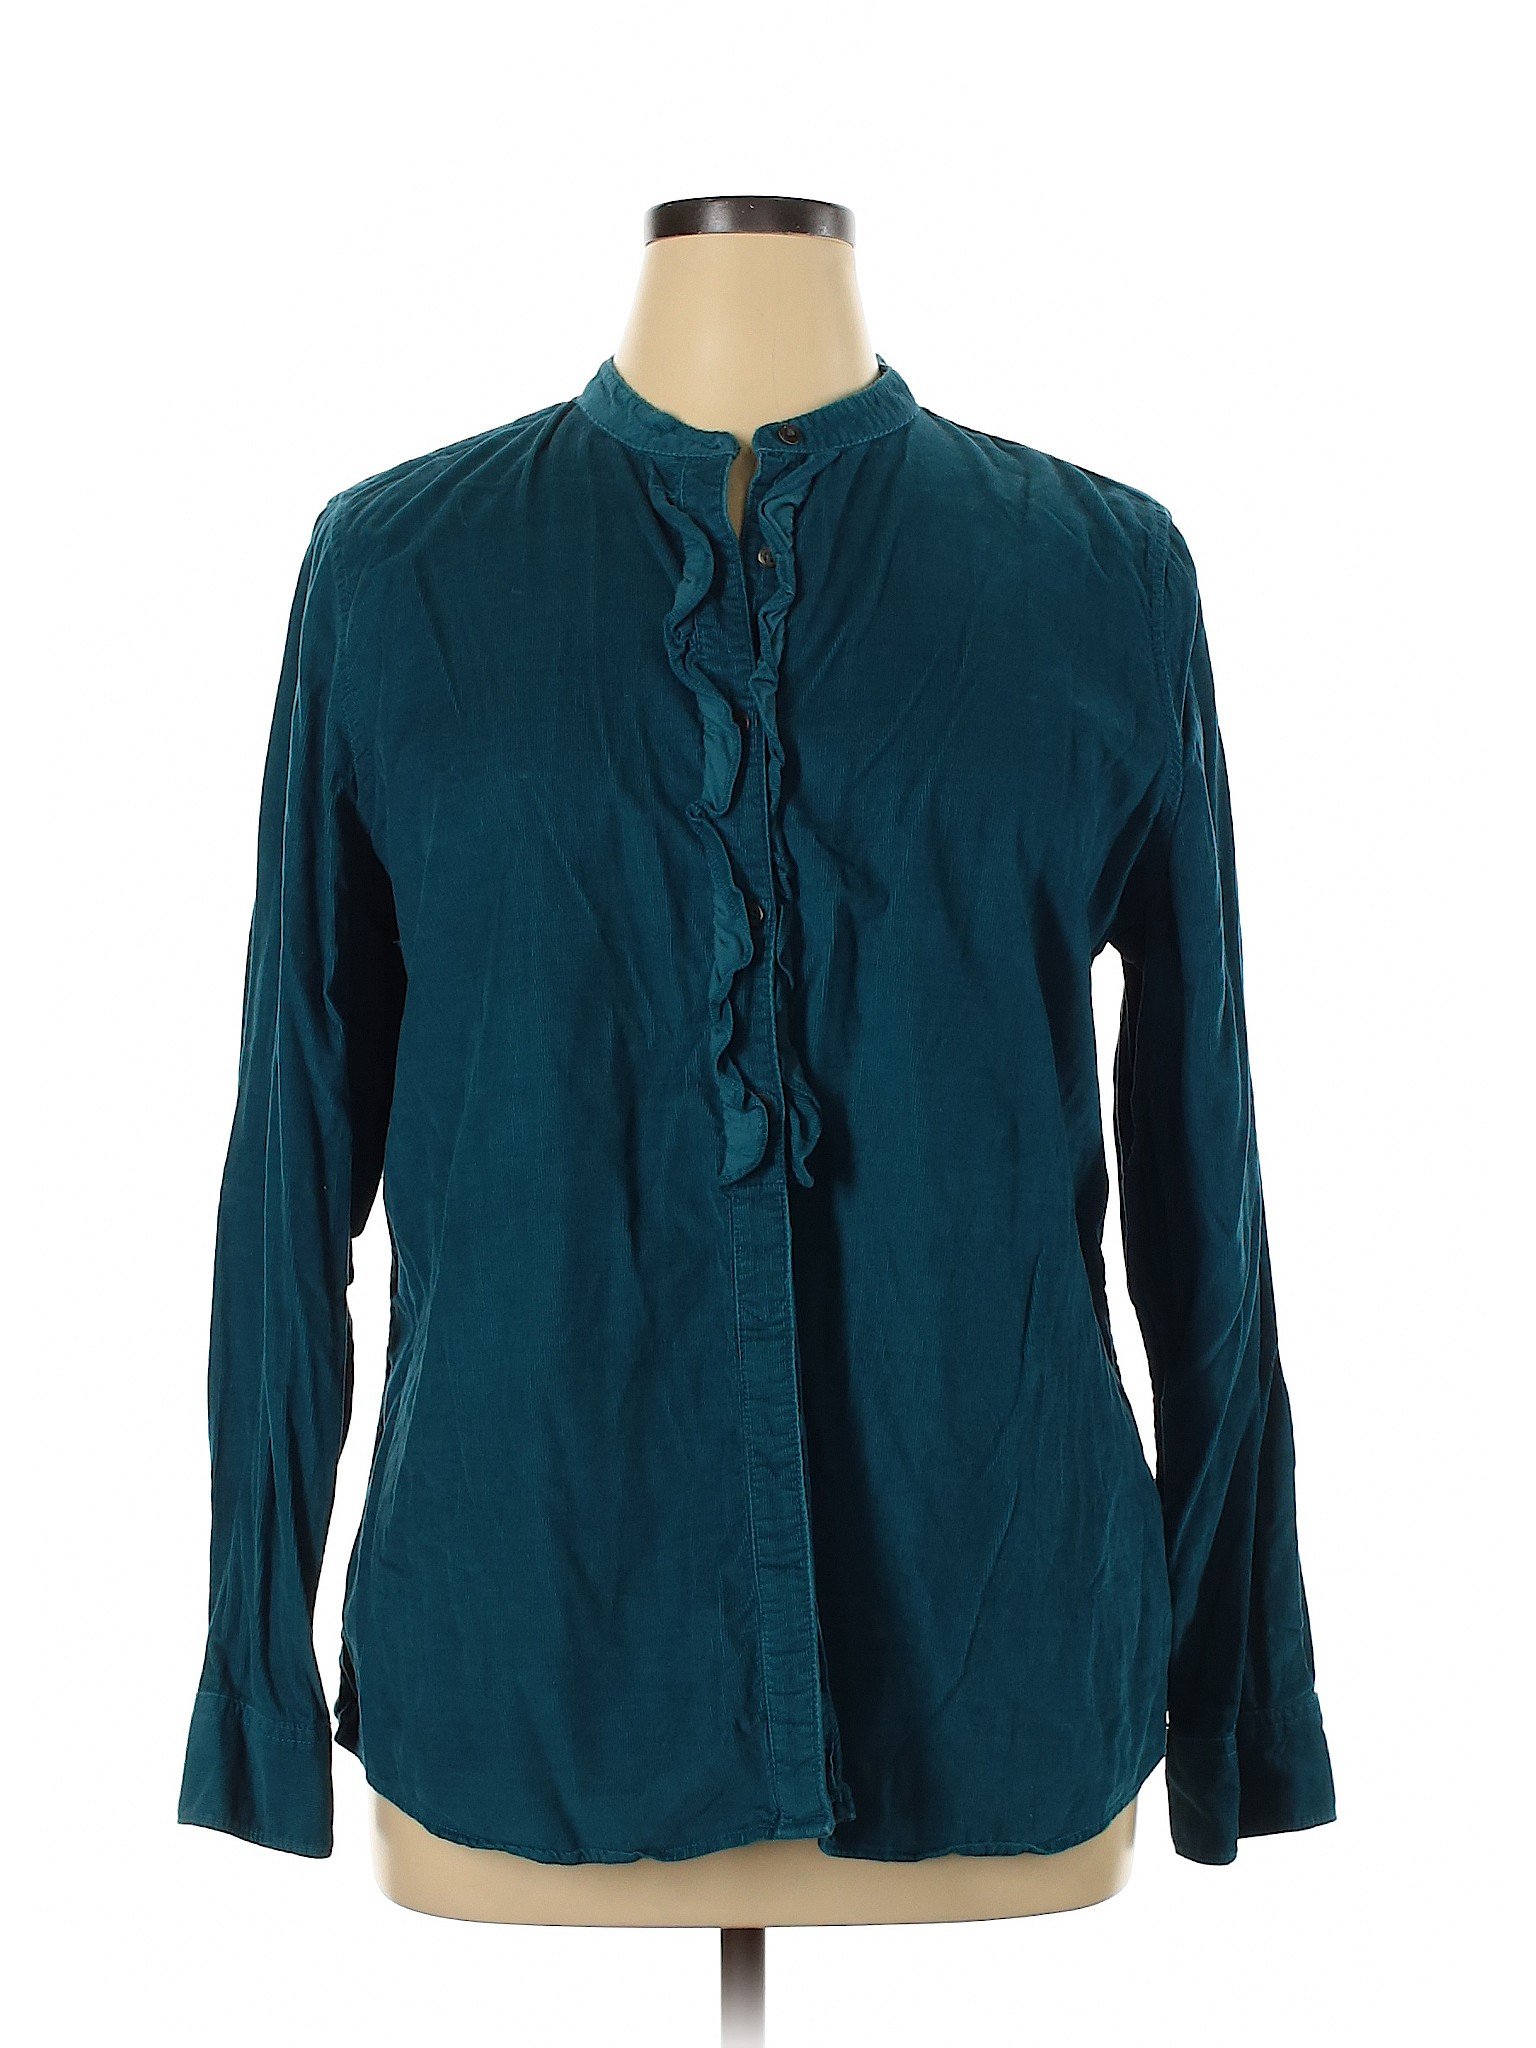 Lands' End Women Green Long Sleeve Button-Down Shirt XL | eBay